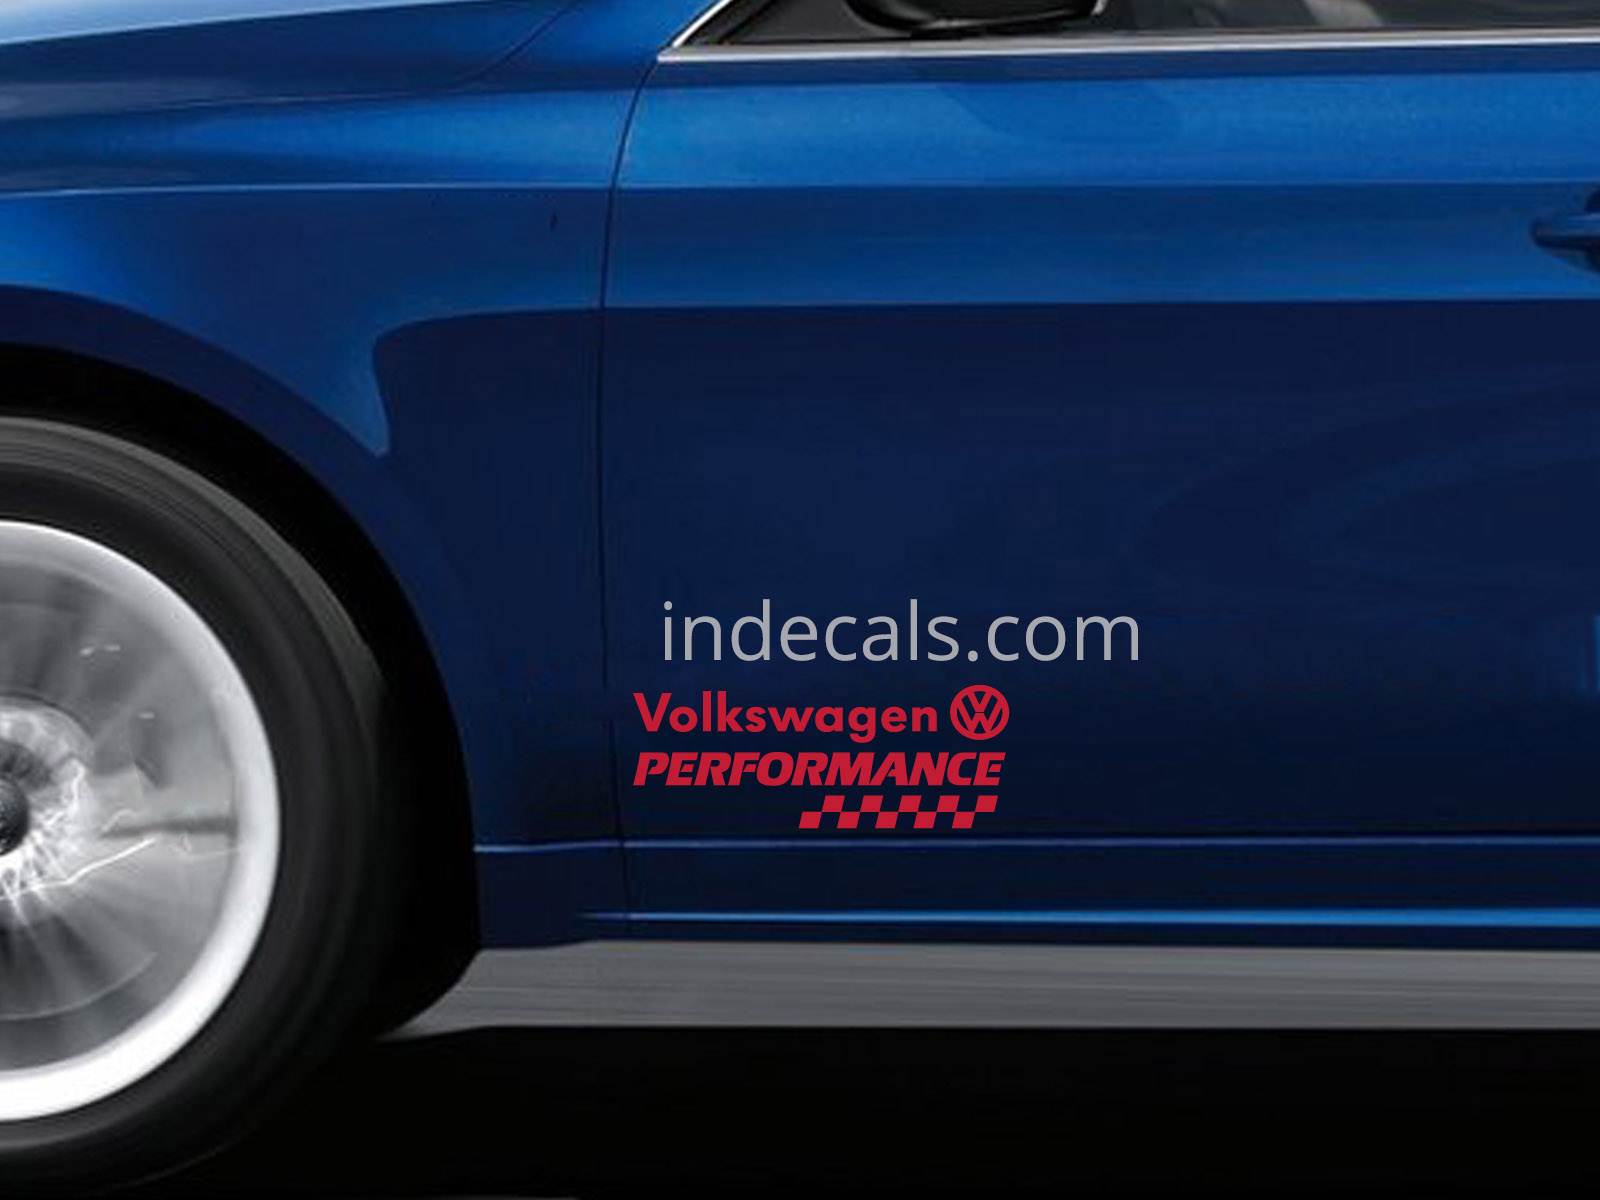 2 x Volkswagen Performance Stickers for Doors - Red